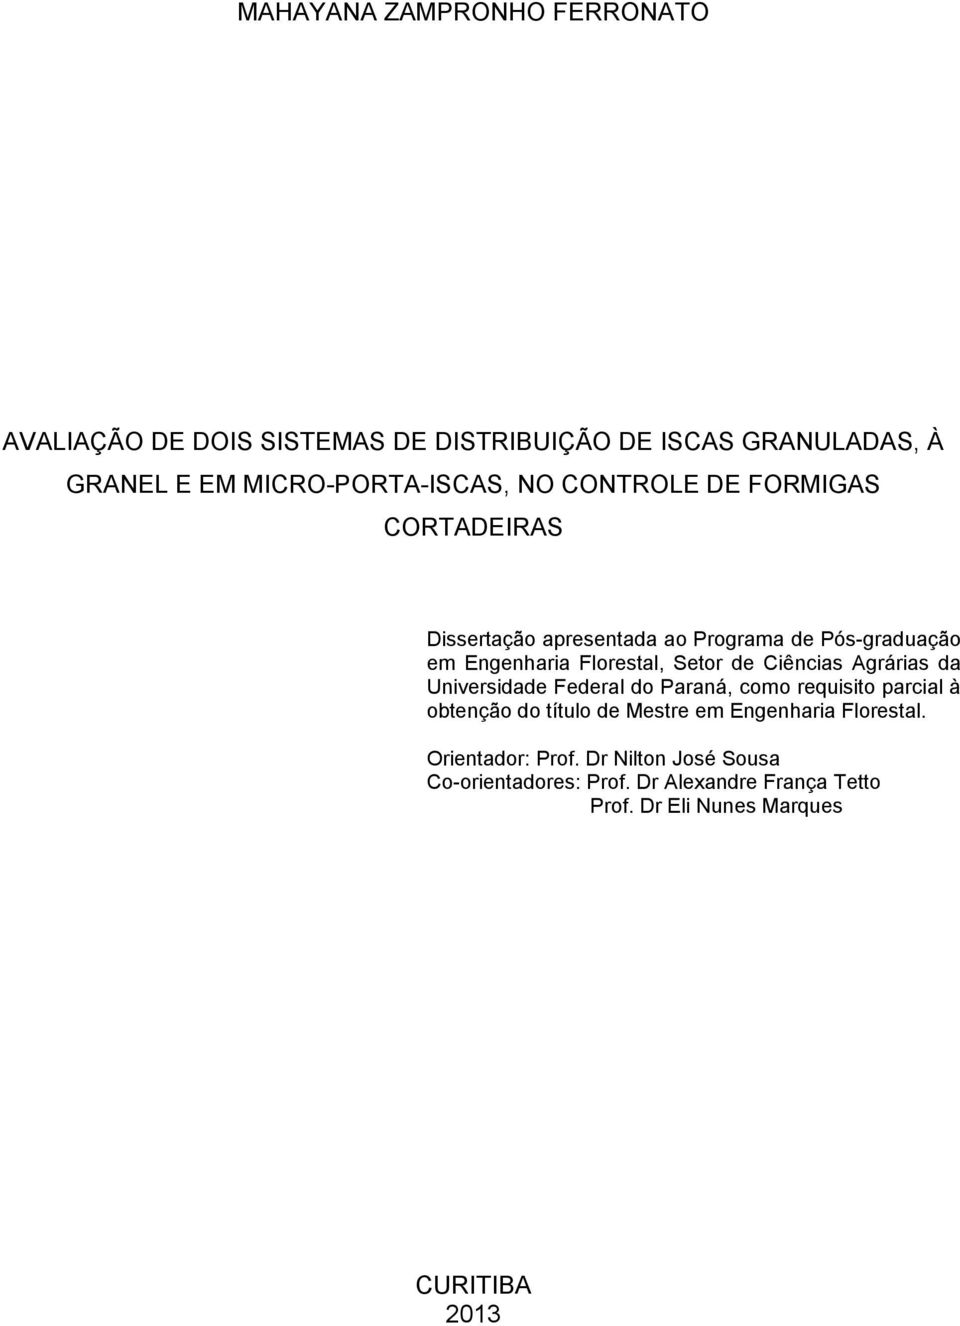 Ciências Agrárias da Universidade Federal do Paraná, como requisito parcial à obtenção do título de Mestre em Engenharia